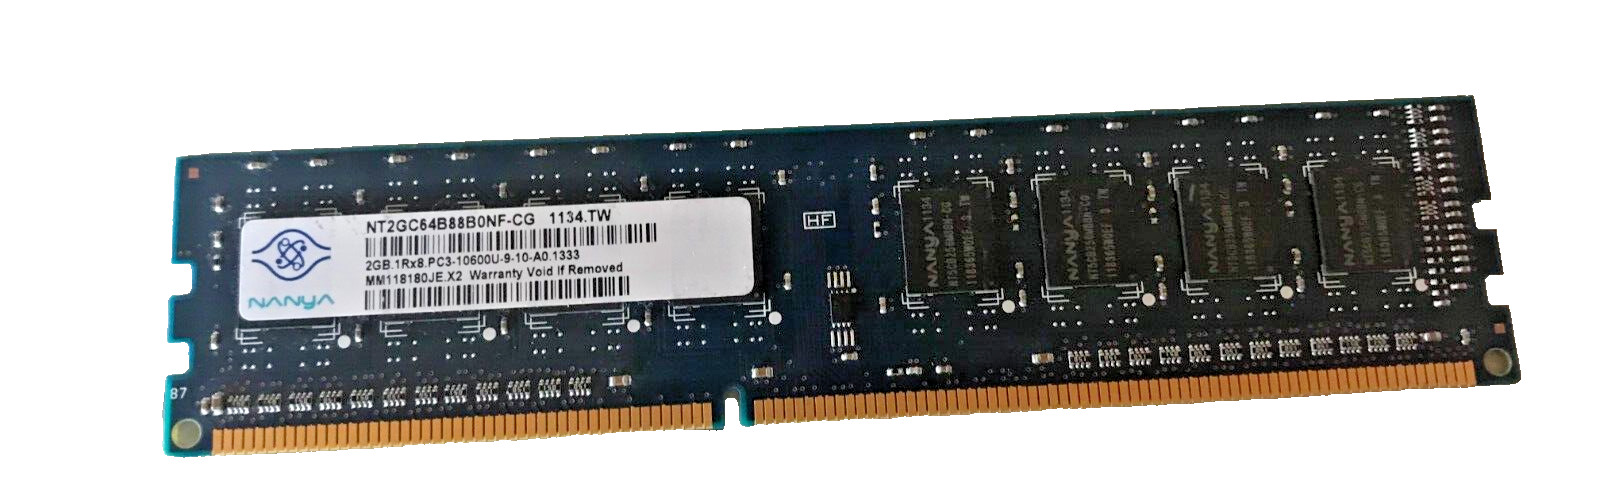 Nanya NT2GC64B88B0NF-CG 2GB PC3-10600 DDR3-1333MHz CL9 240-Pin DIMM Memory RAM